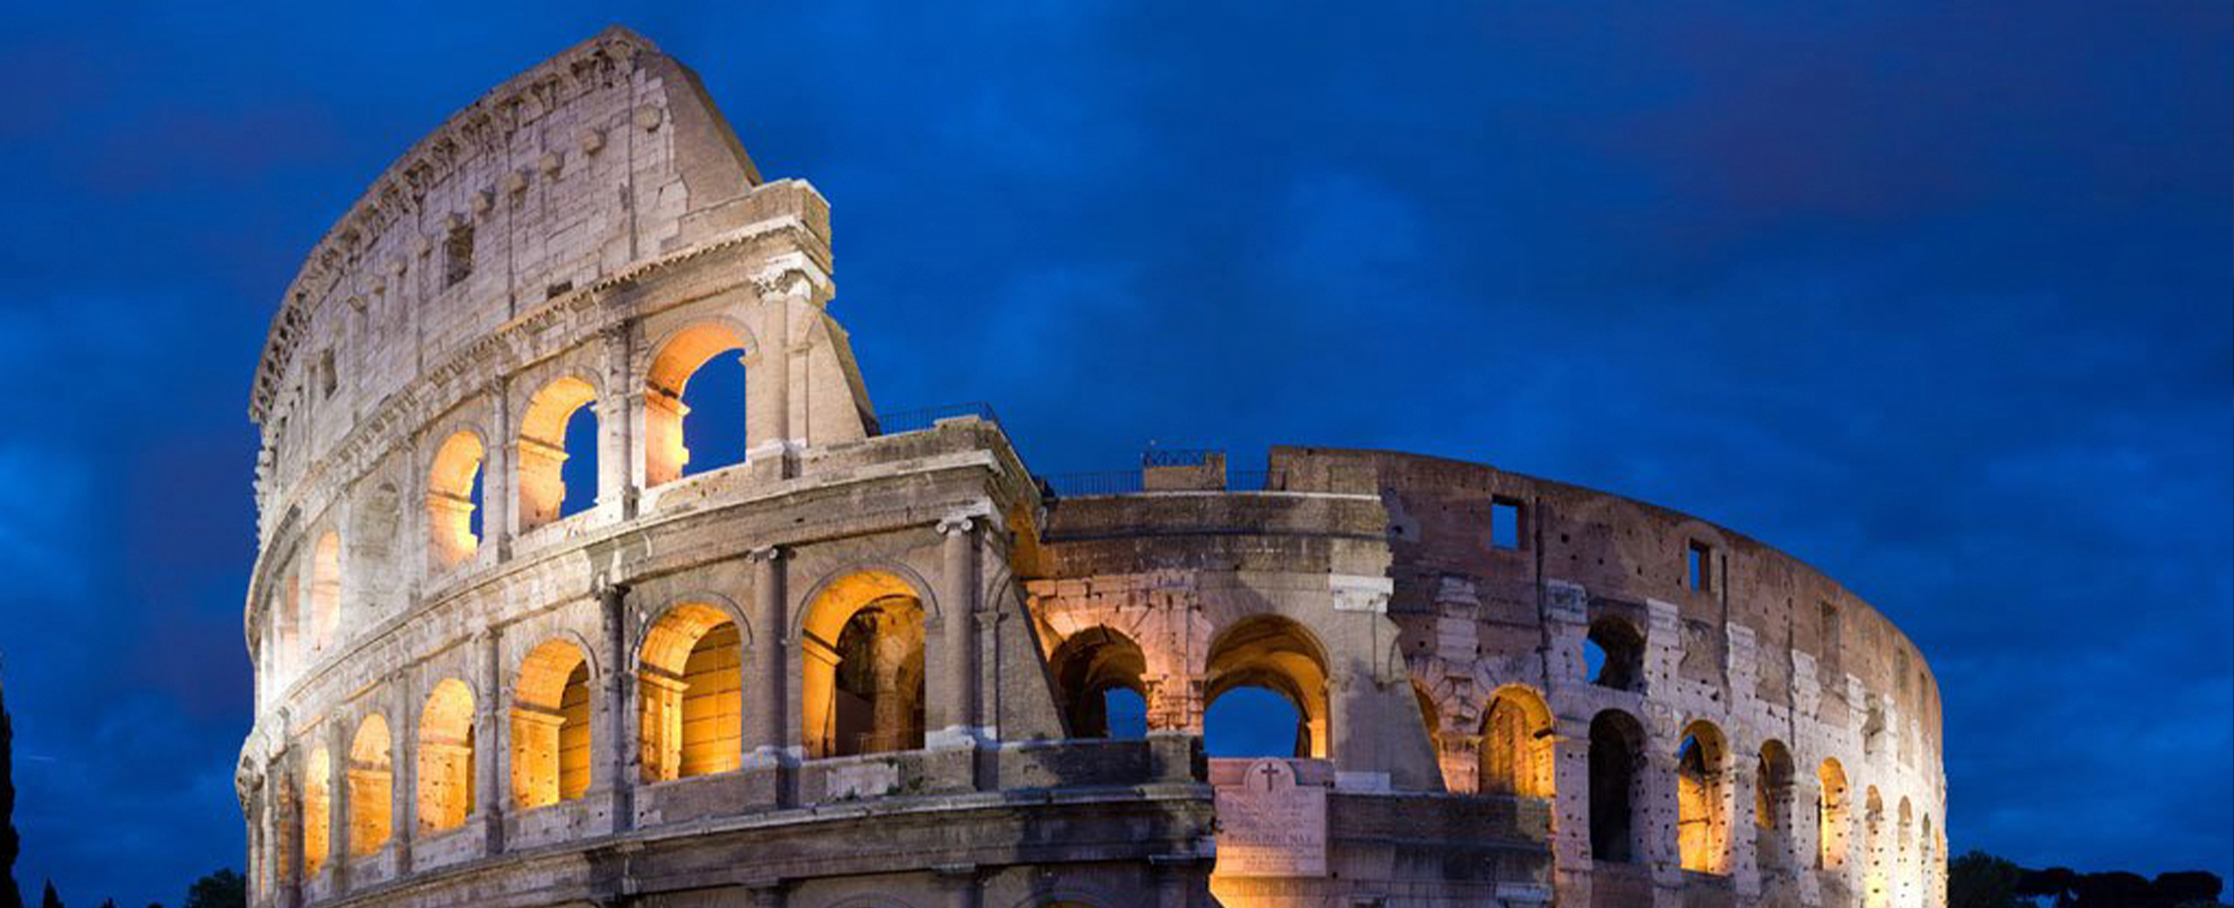 El colmo de los colmos, el Coliseo